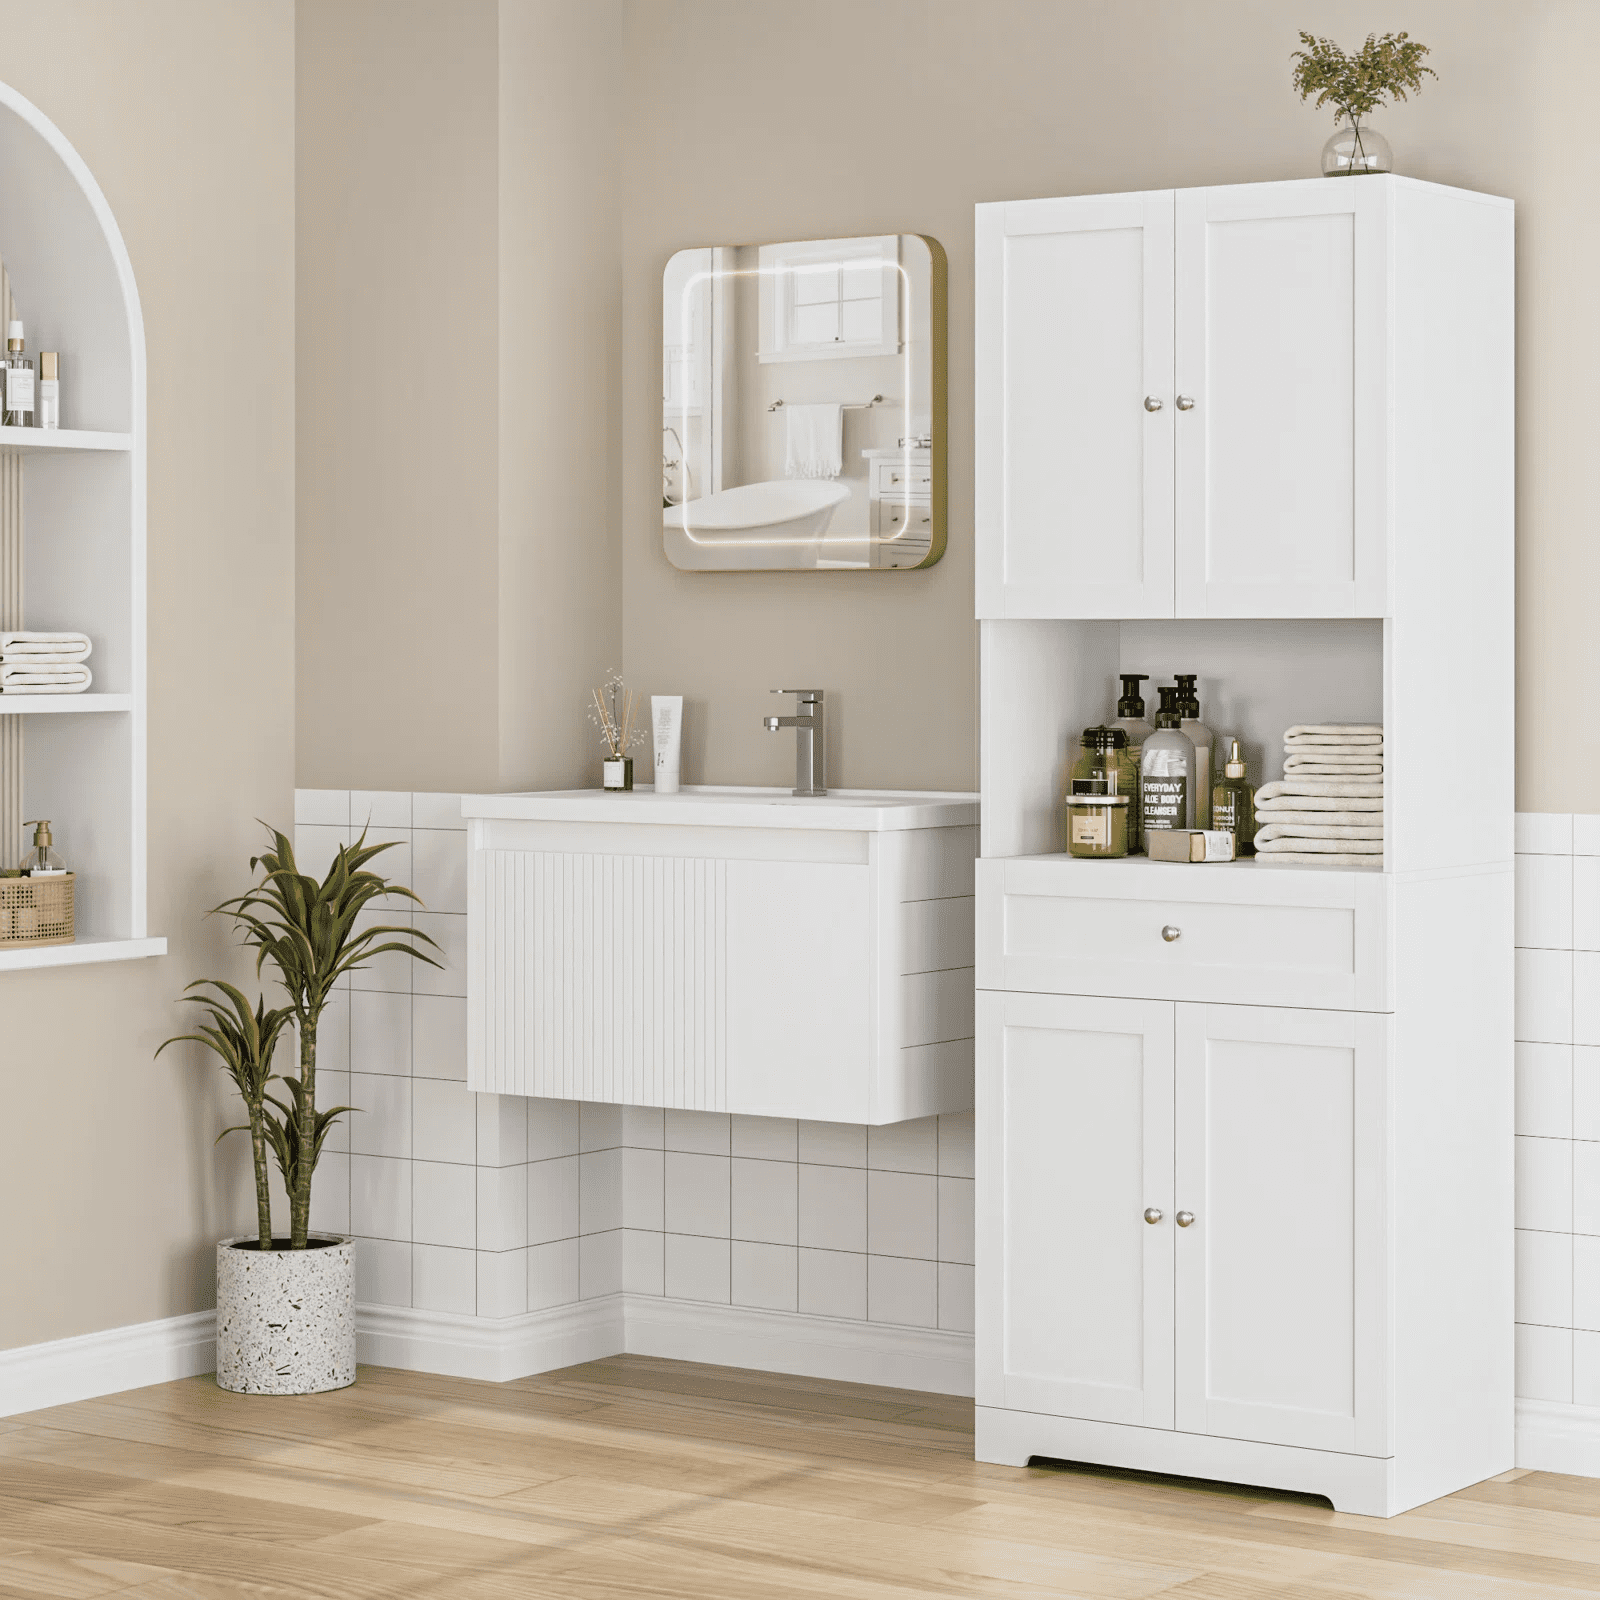 Spirich Home Slim Bathroom Storage Cabinet, Free Standing Toilet Paper–  spirichhome